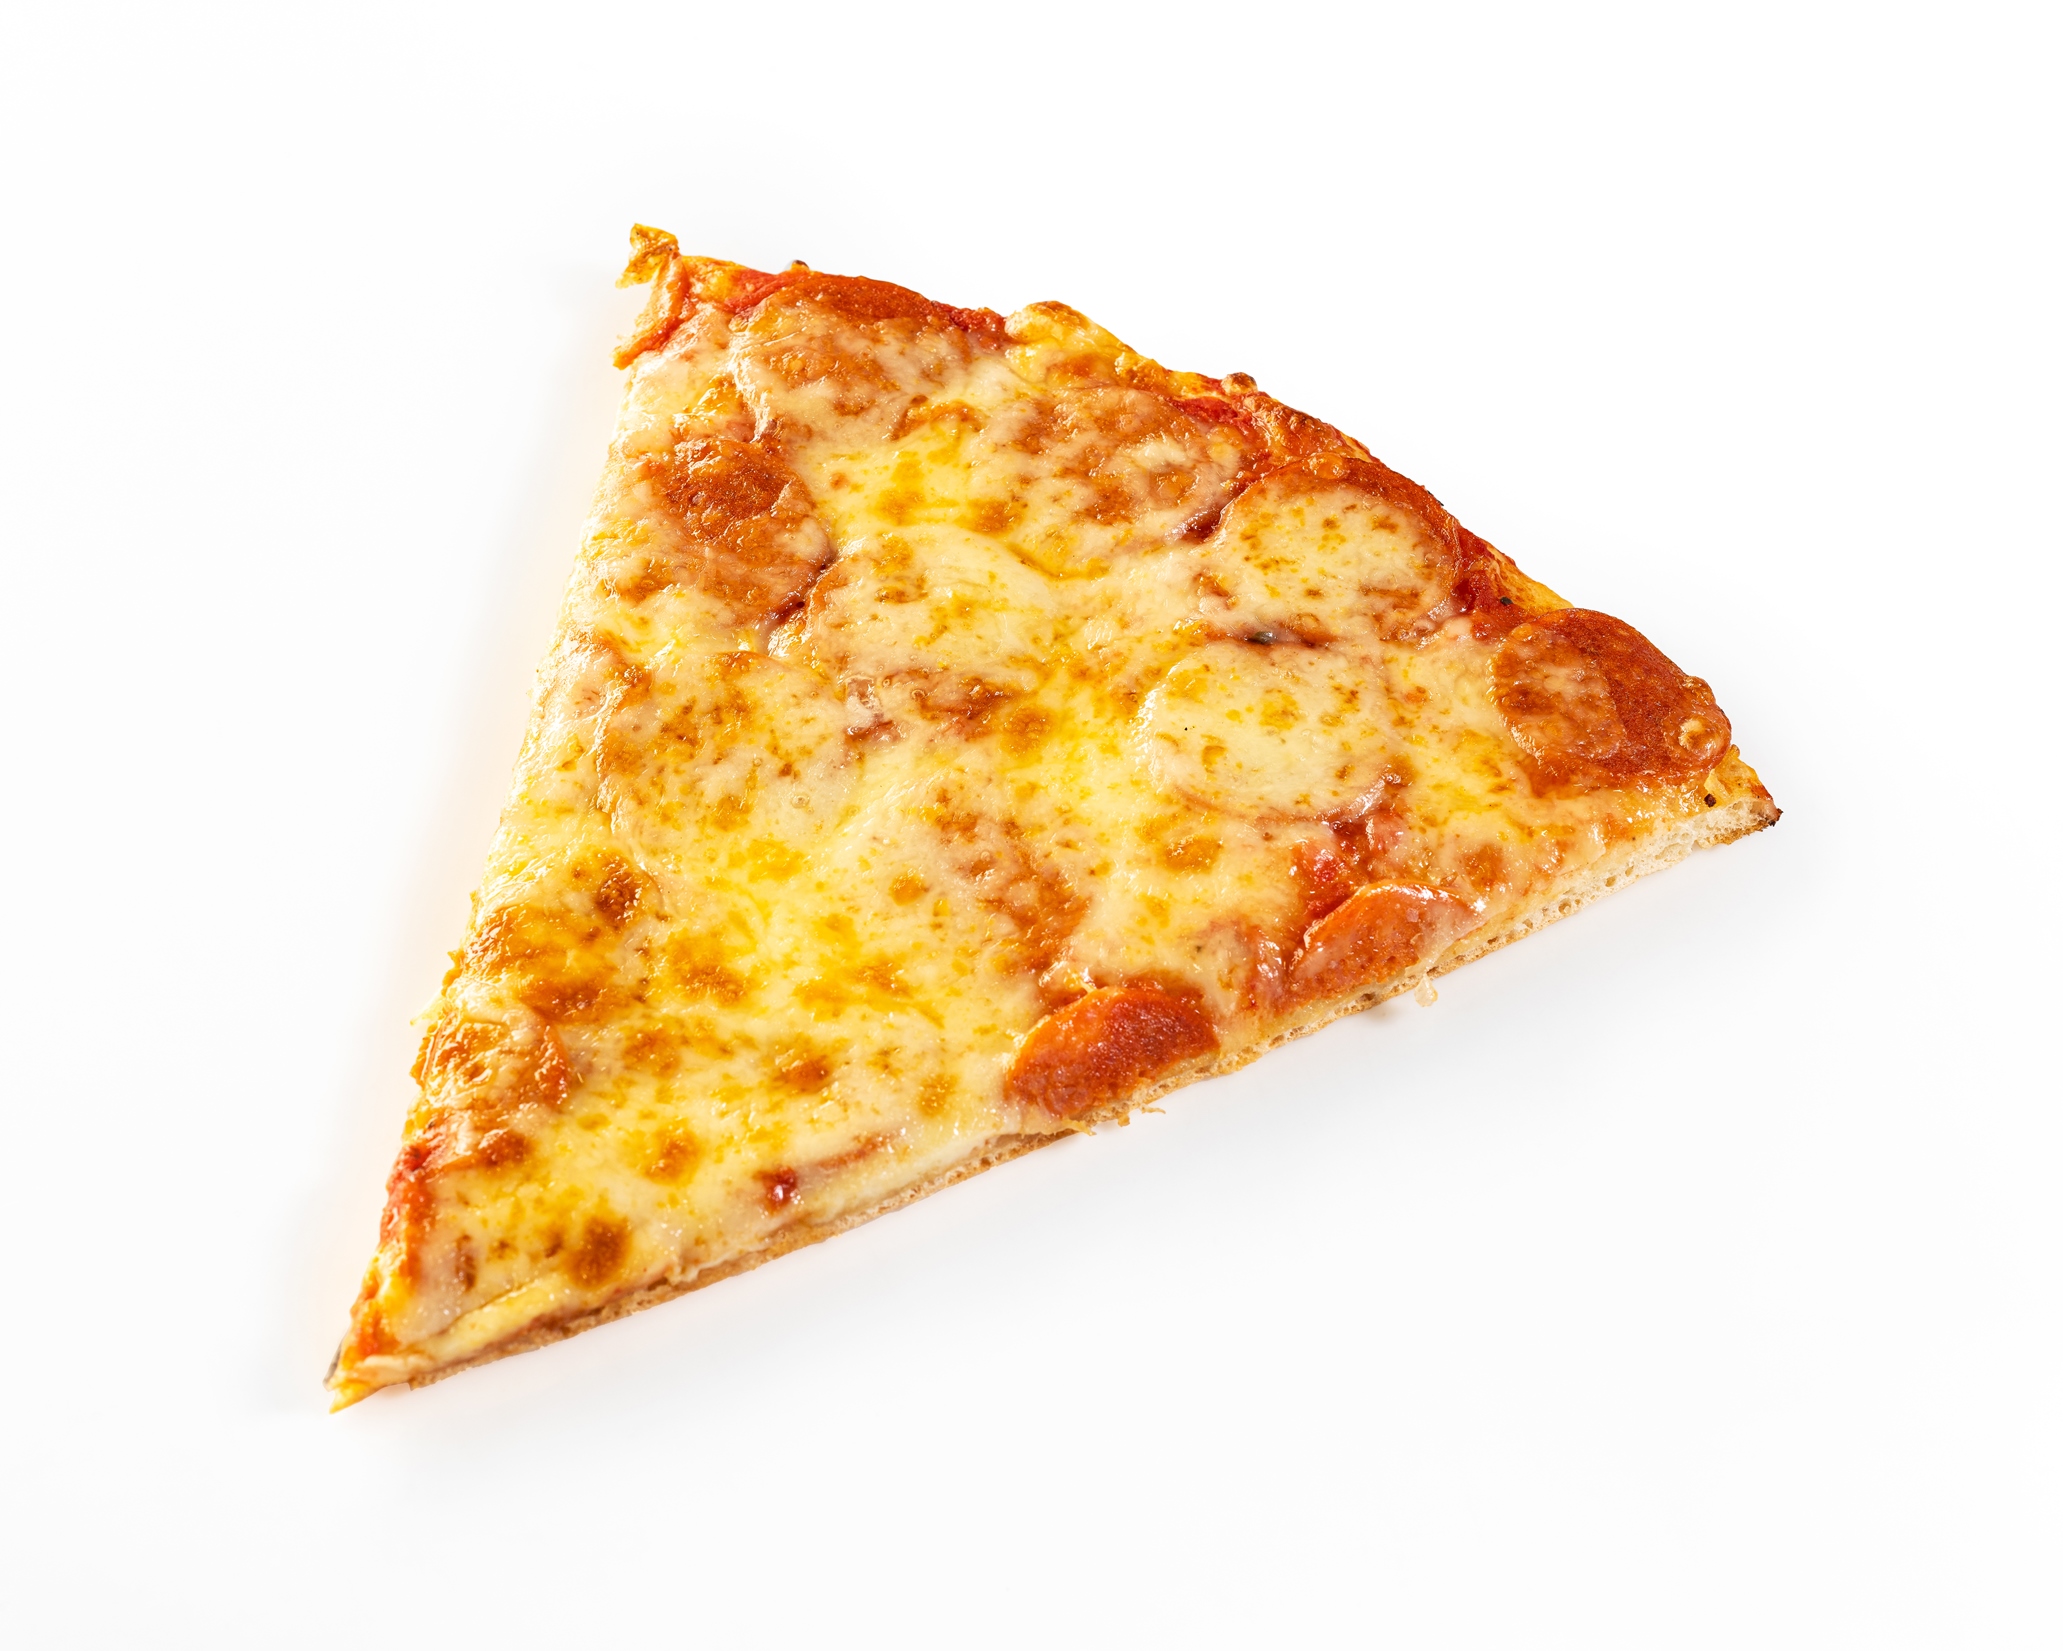 сколько калорий в куске пиццы пепперони фото 104